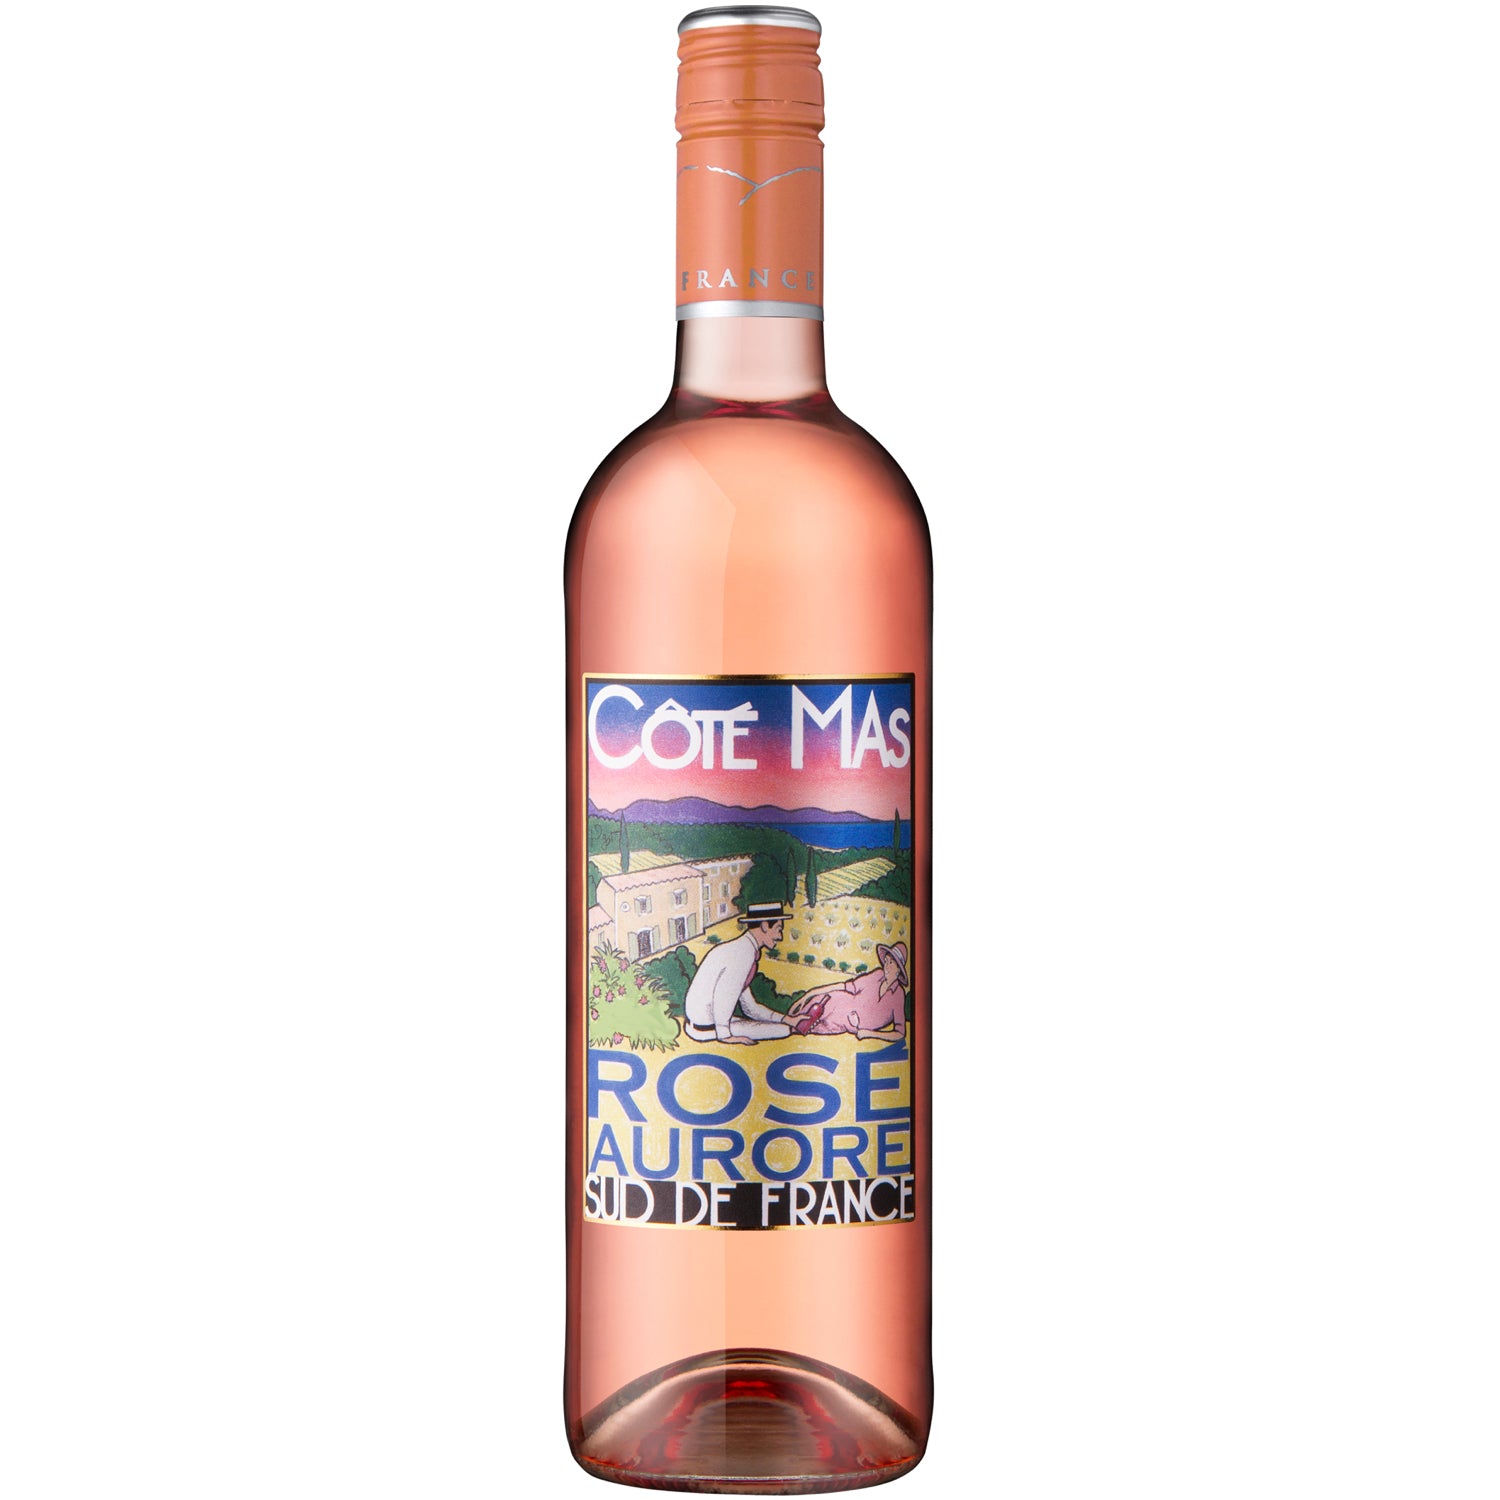 Côtes Mas Rosé Aurore [750ml]